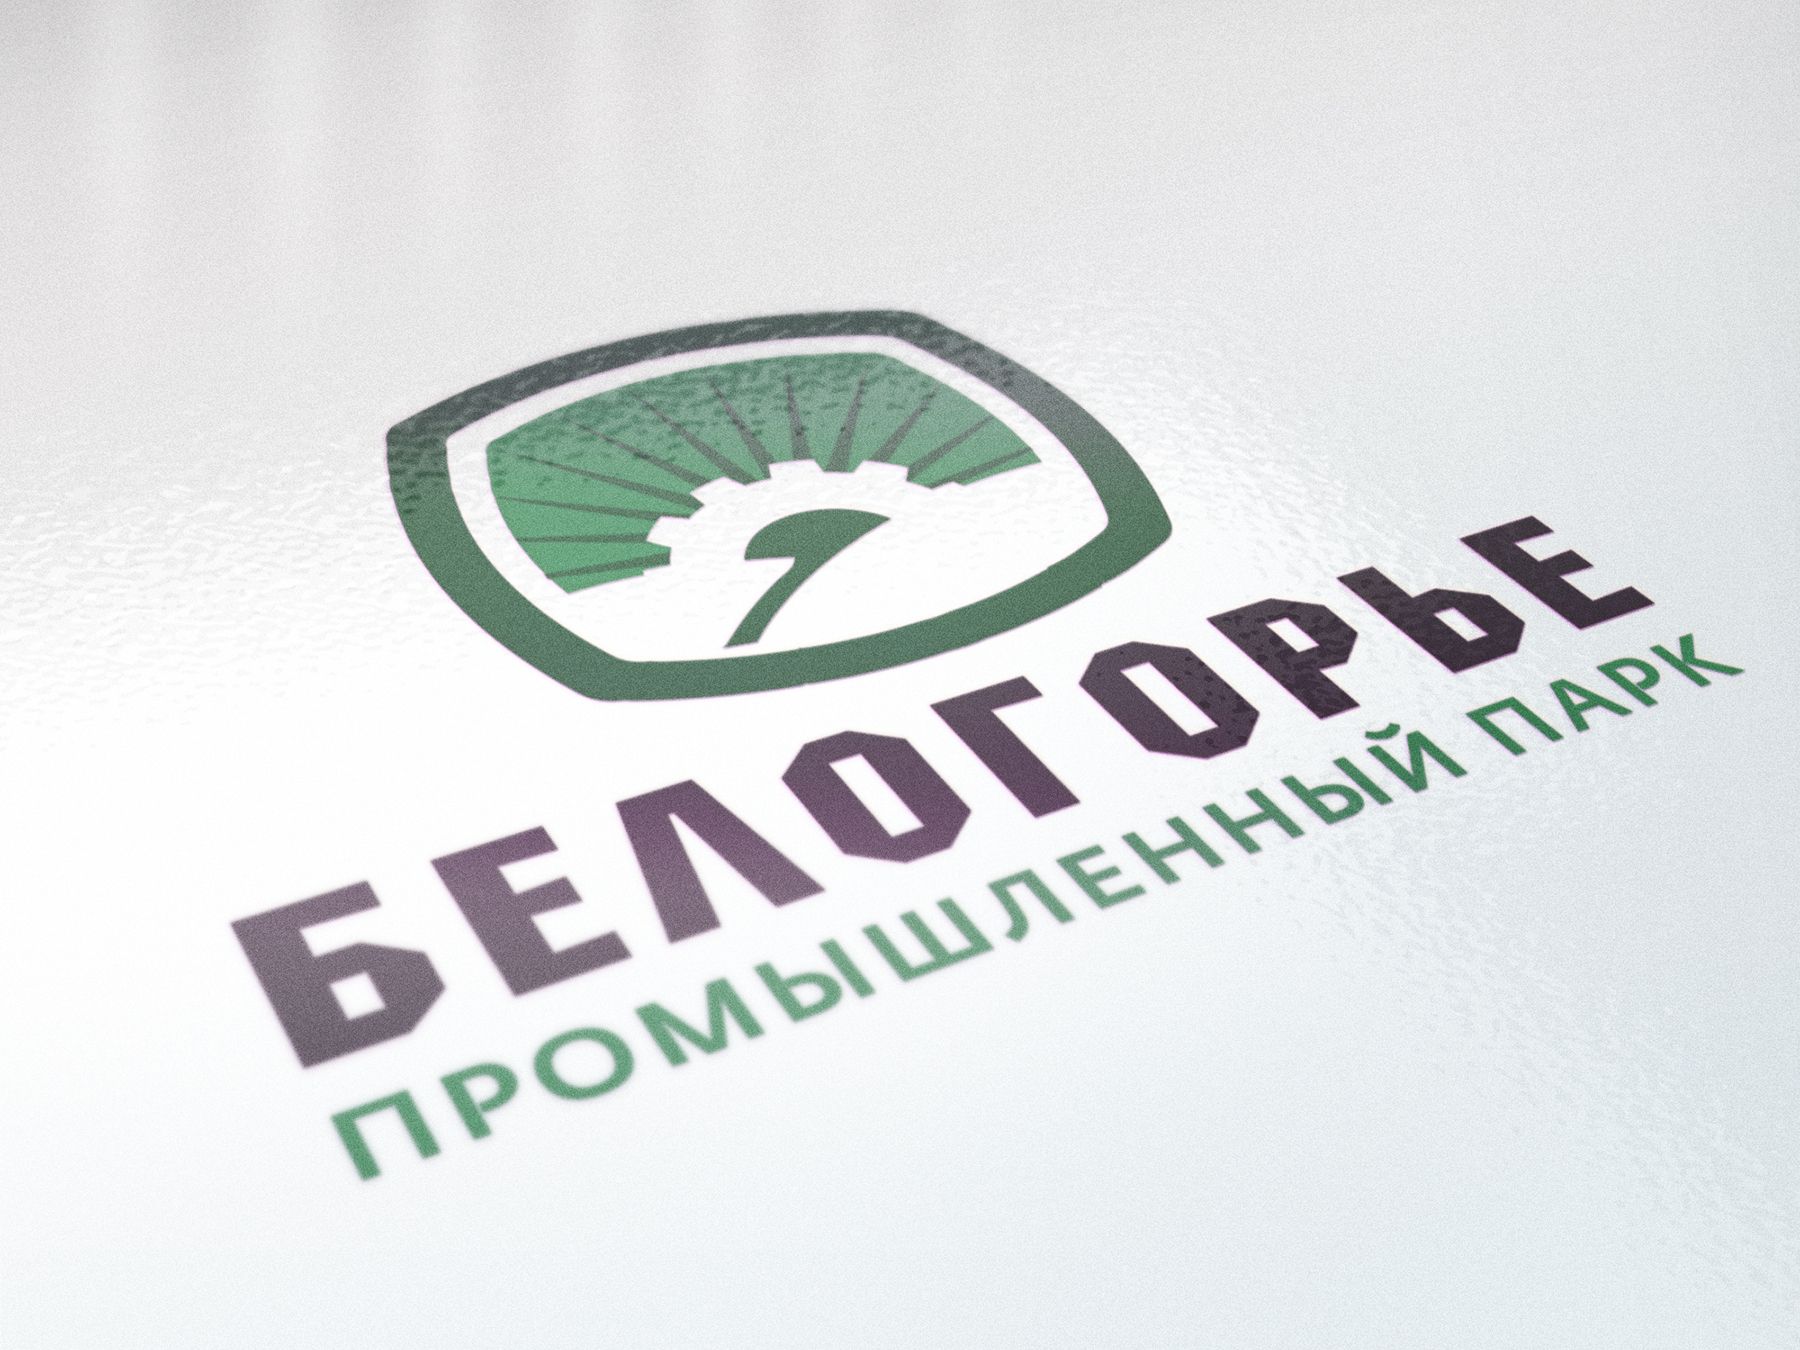 Лого и фирменный стиль для Промышленный парк БЕЛОГОРЬЕ - дизайнер Da4erry